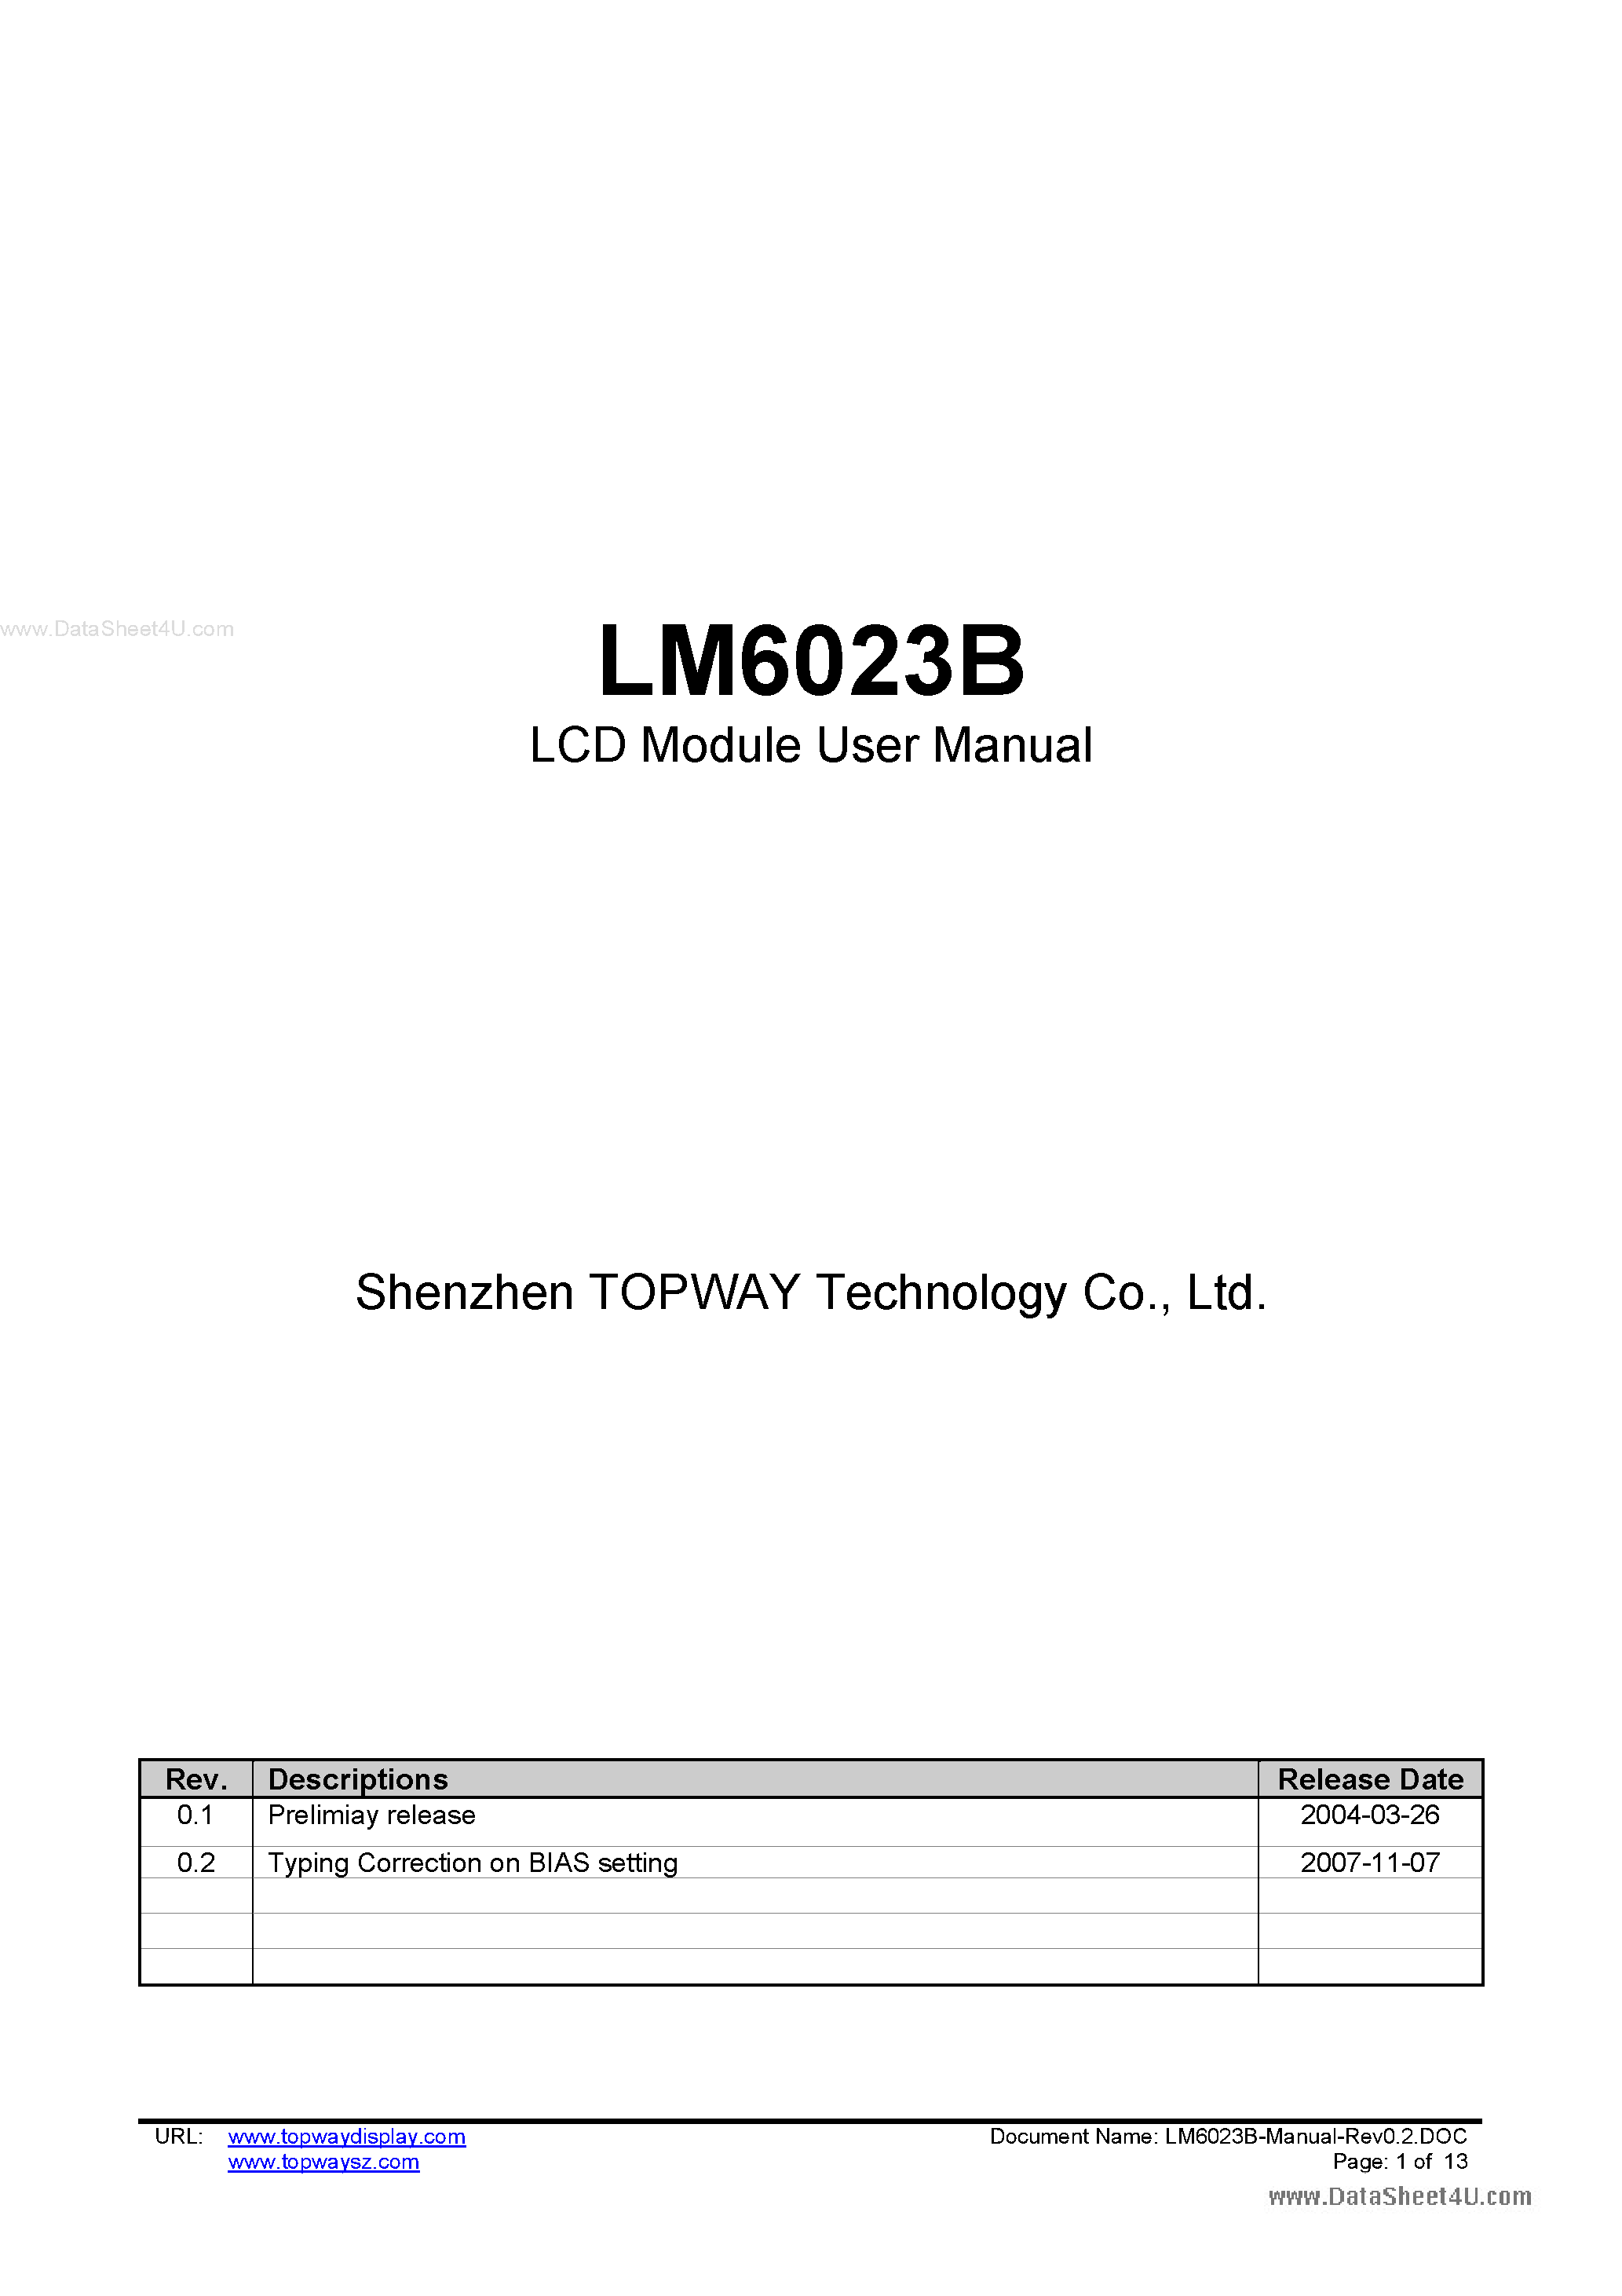 Даташит LM6023B - LCD Module страница 1